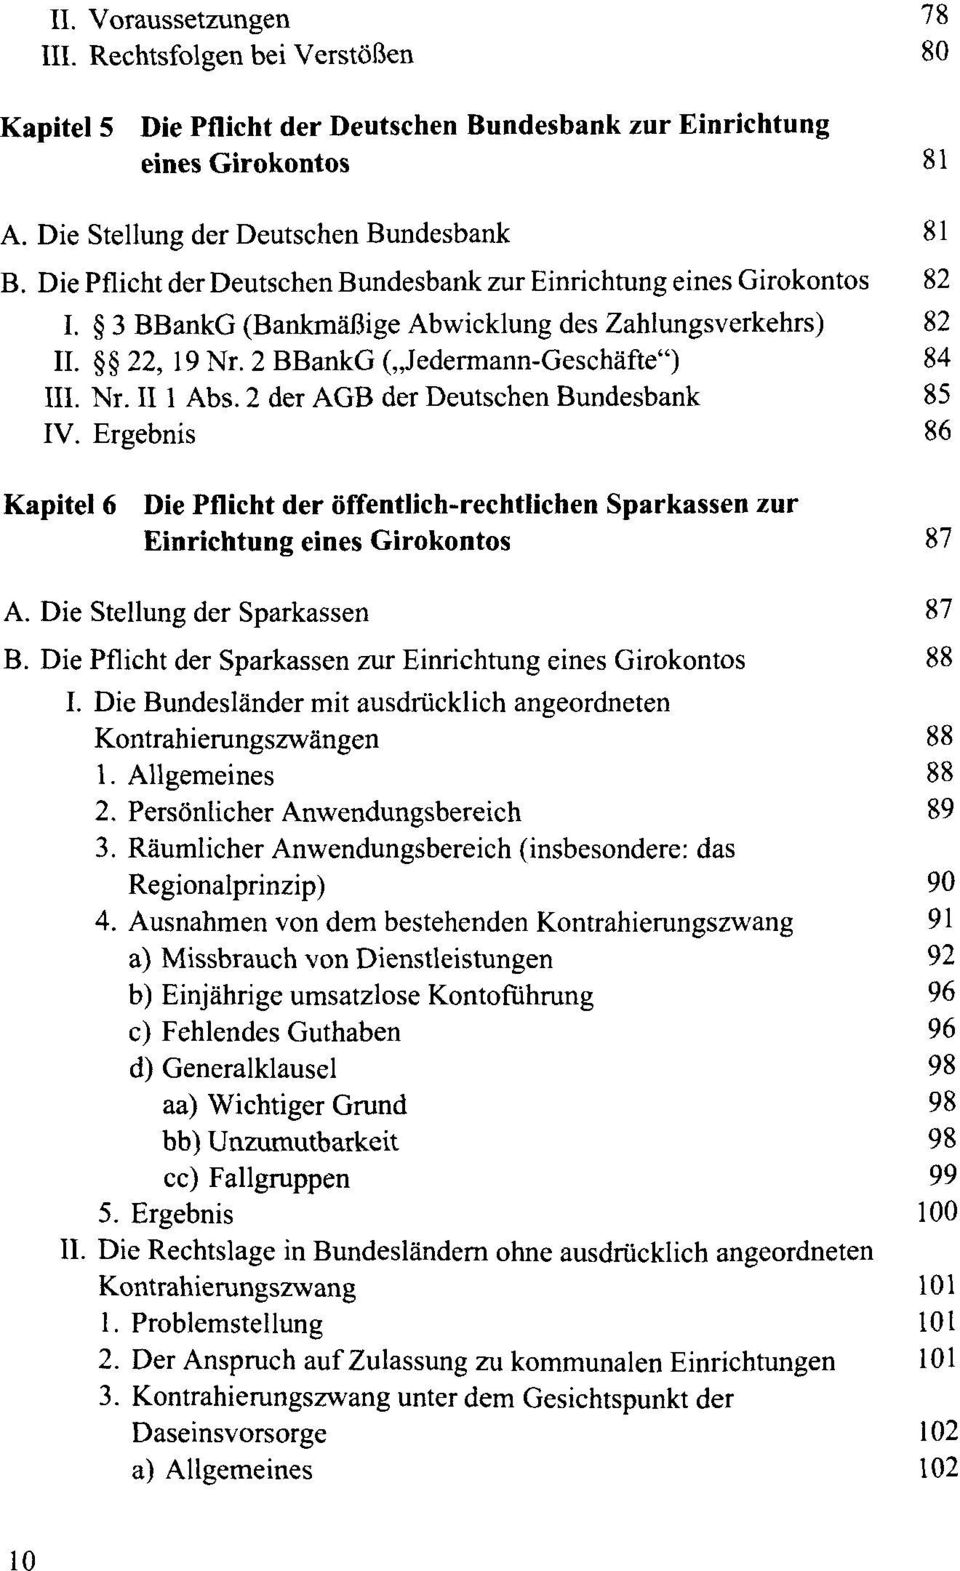 2 der AGB der Deutschen Bundesbank 85 IV. Ergebnis 86 Kapitel 6 Die Pflicht der öffentlich-rechtlichen Sparkassen zur Einrichtung eines Girokontos 87 A. Die Stellung der Sparkassen 87 B.